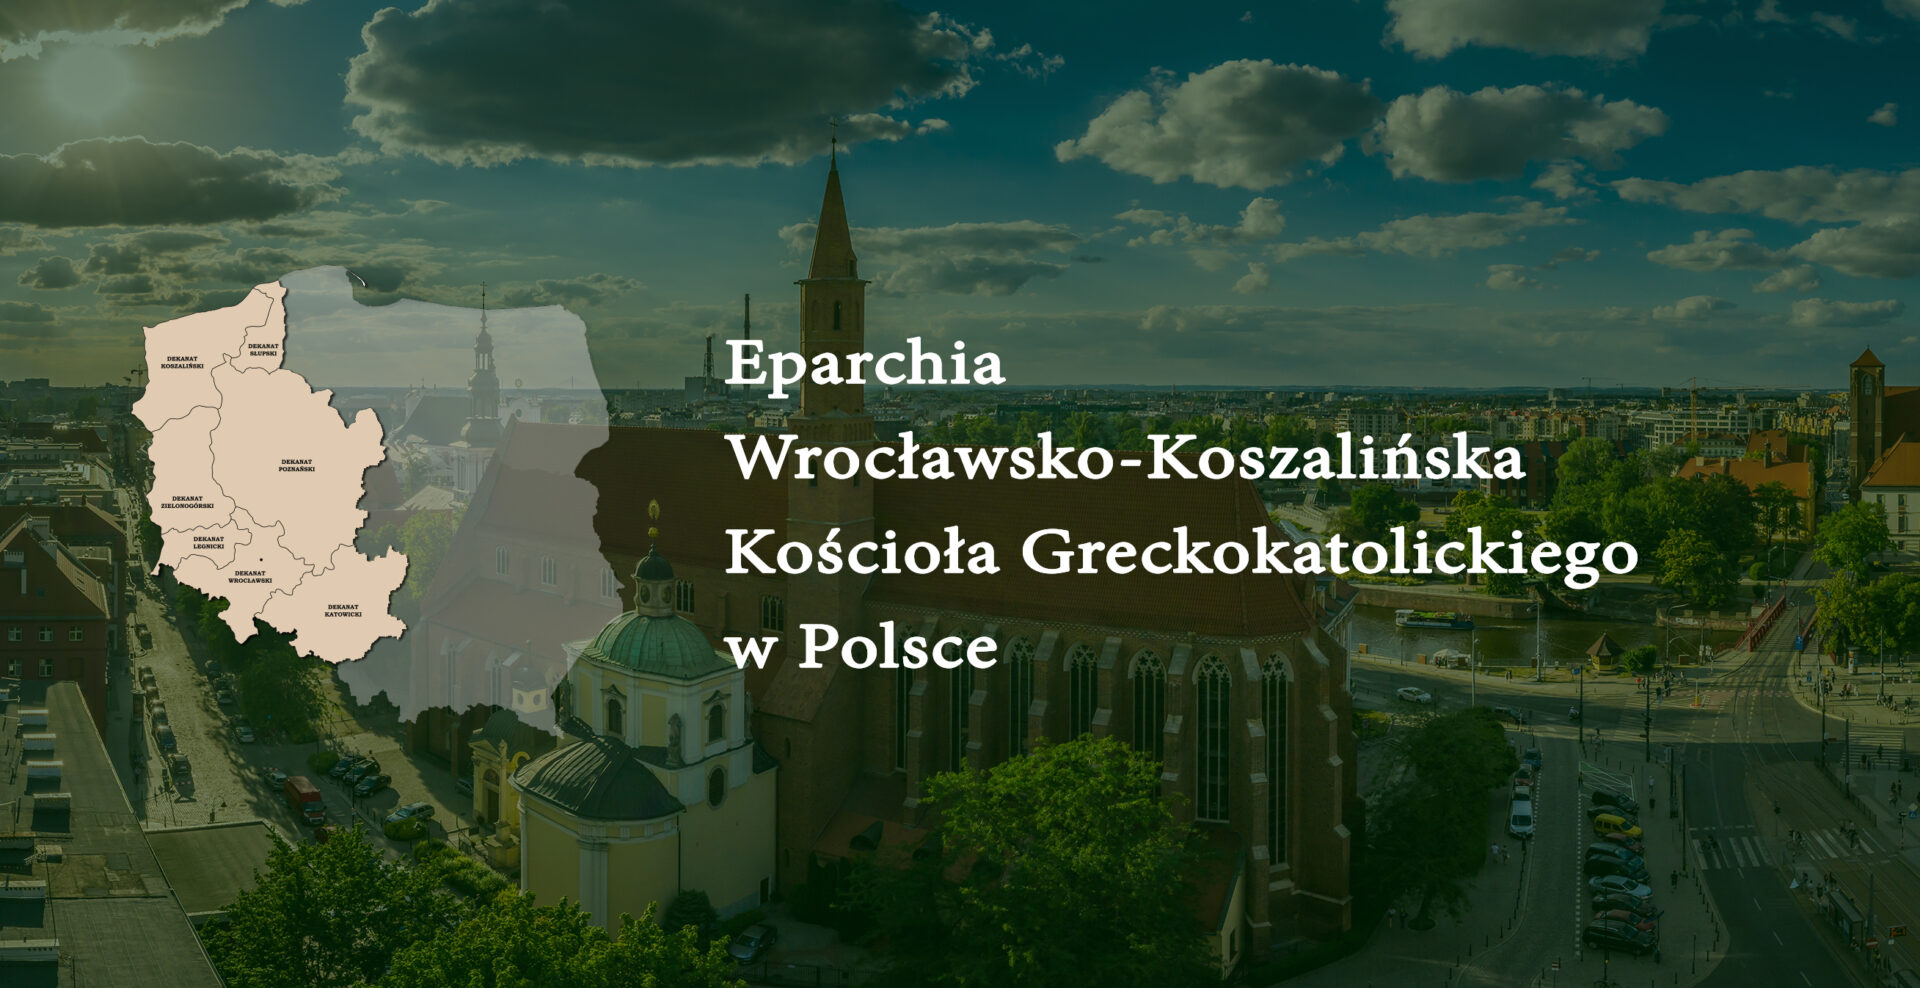 15-18 червня 2022 р. в Поршевіцах відбудеться Собор Вроцлавсько-Кошалінської єпархії